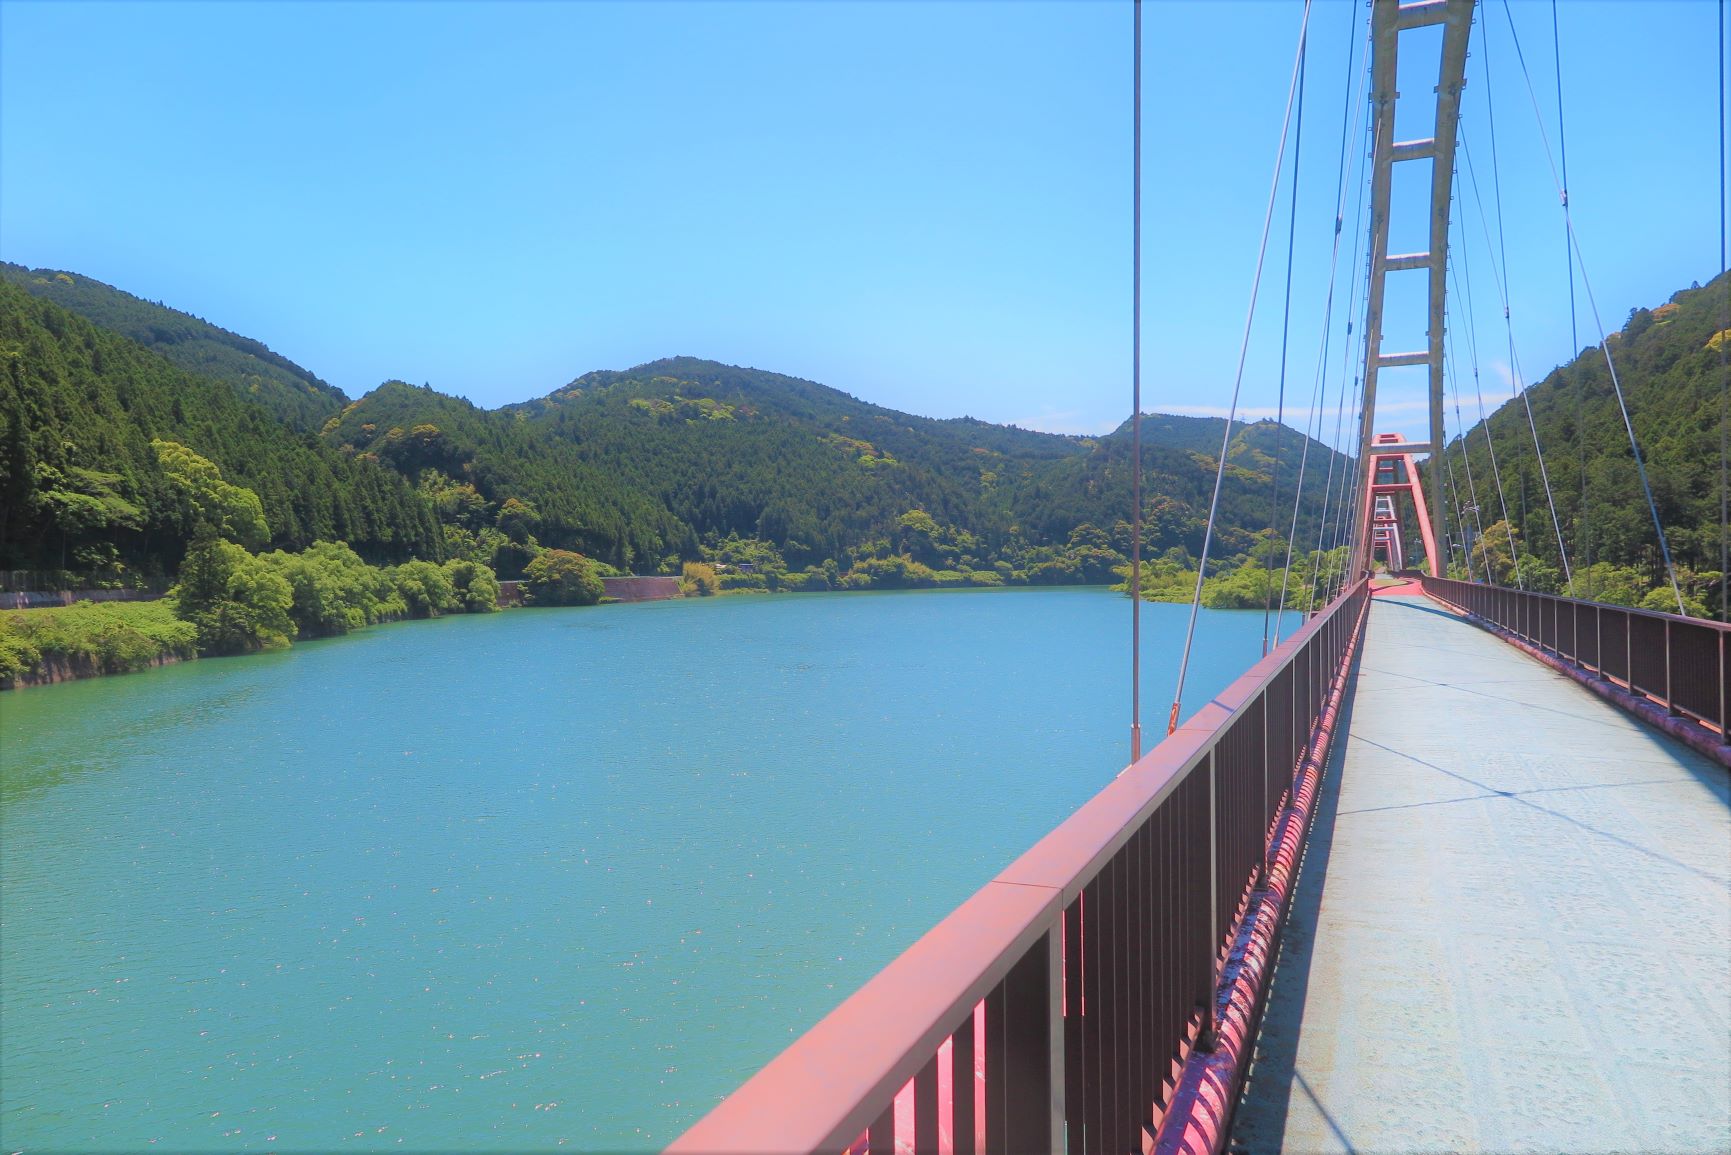 A dream bridge over the TENRYU River